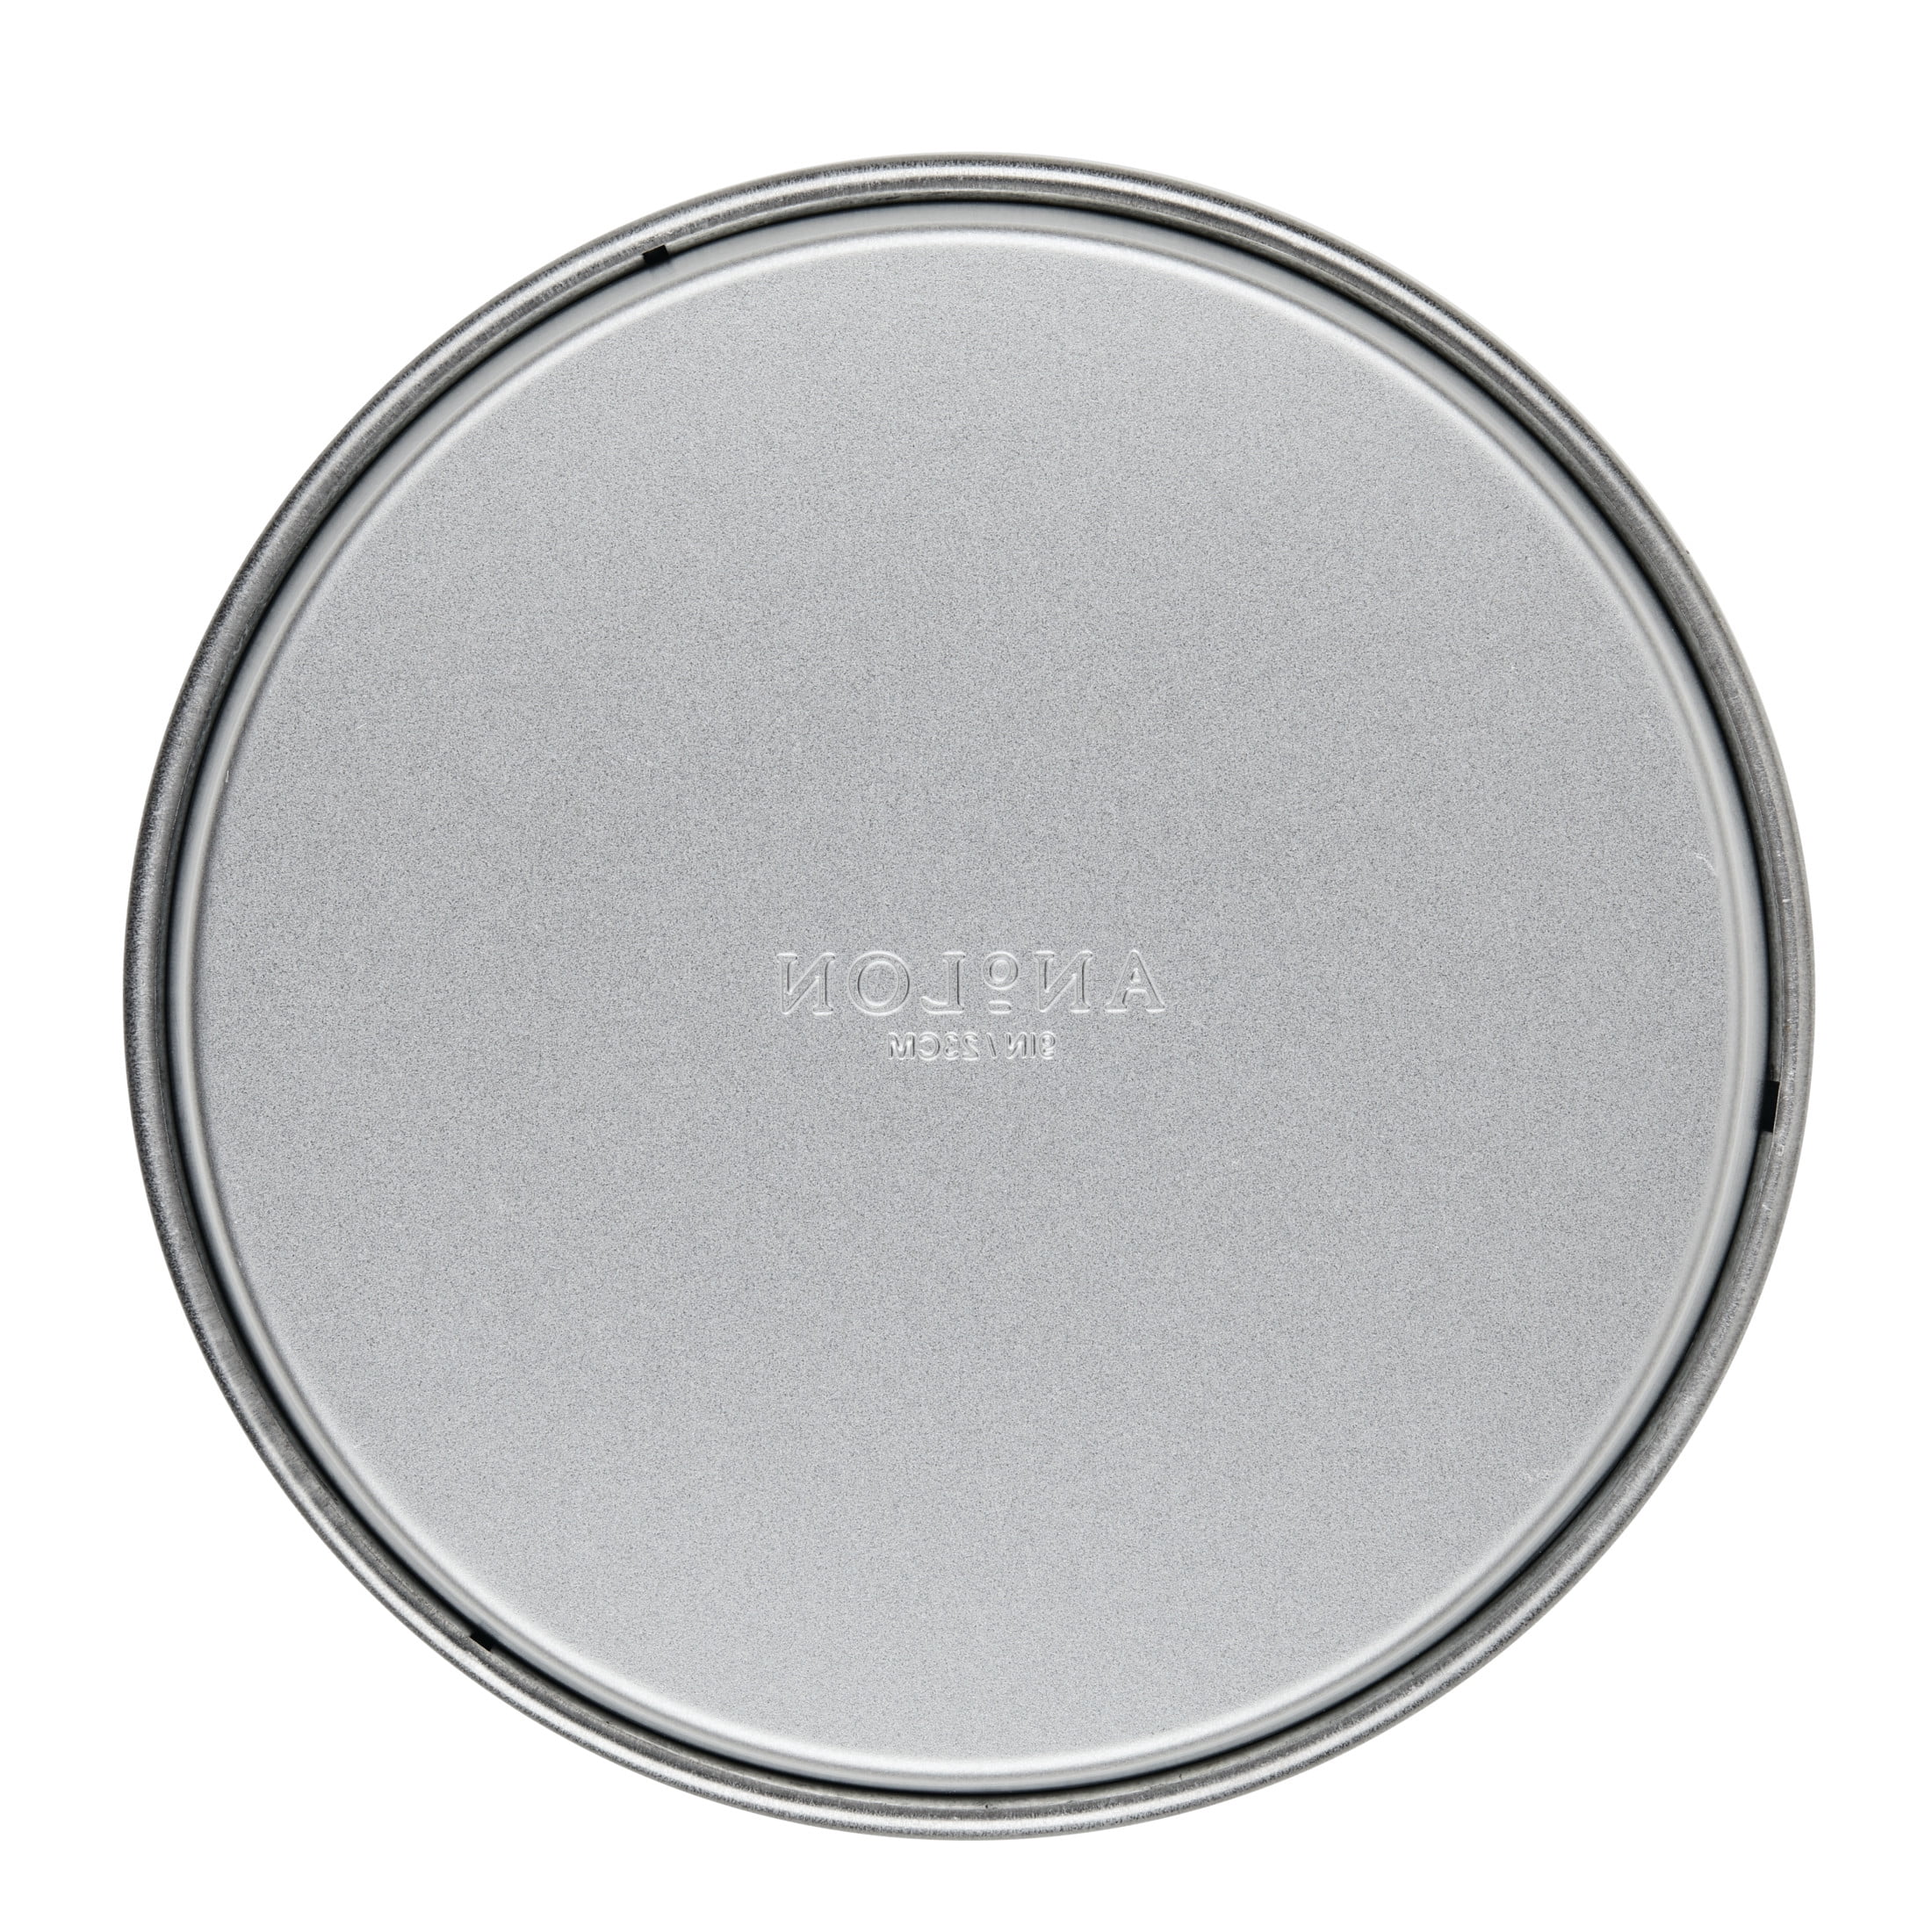 9-Inch x 5-Inch Aluminized Steel Loaf Pan – Anolon